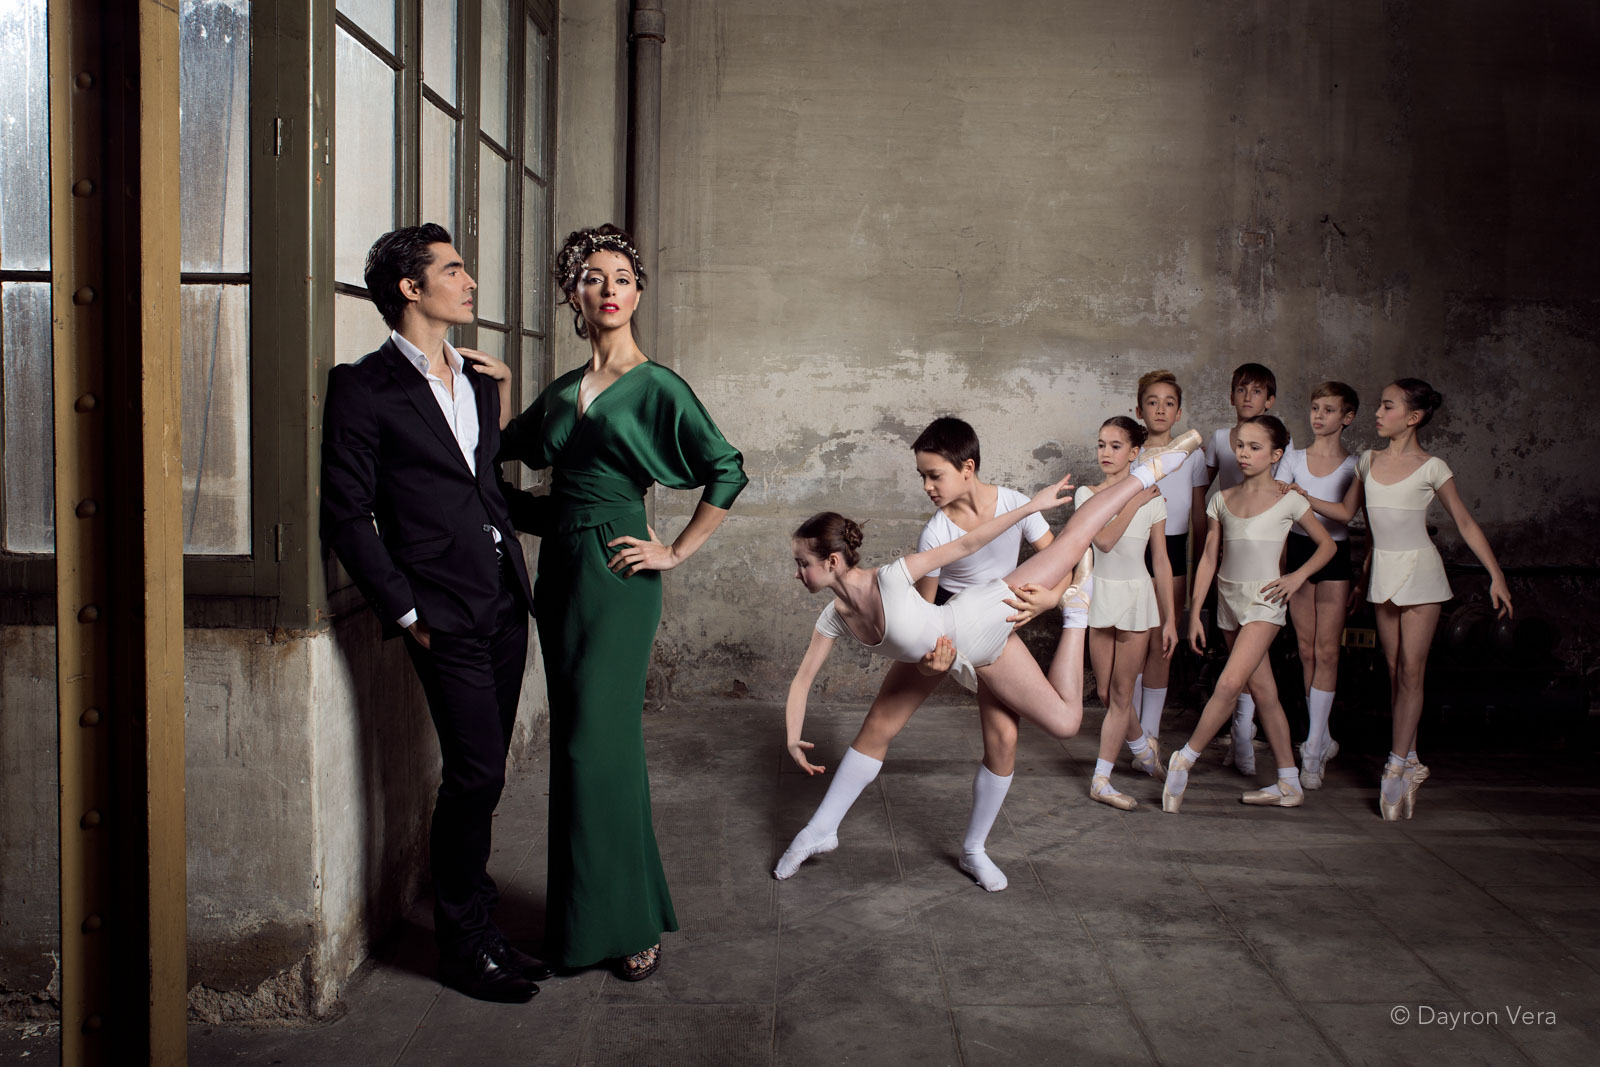 Scopri di più sull'articolo La Corella Ballet Academy ospite al Premio Internazionale di Danza San Nicola 2019